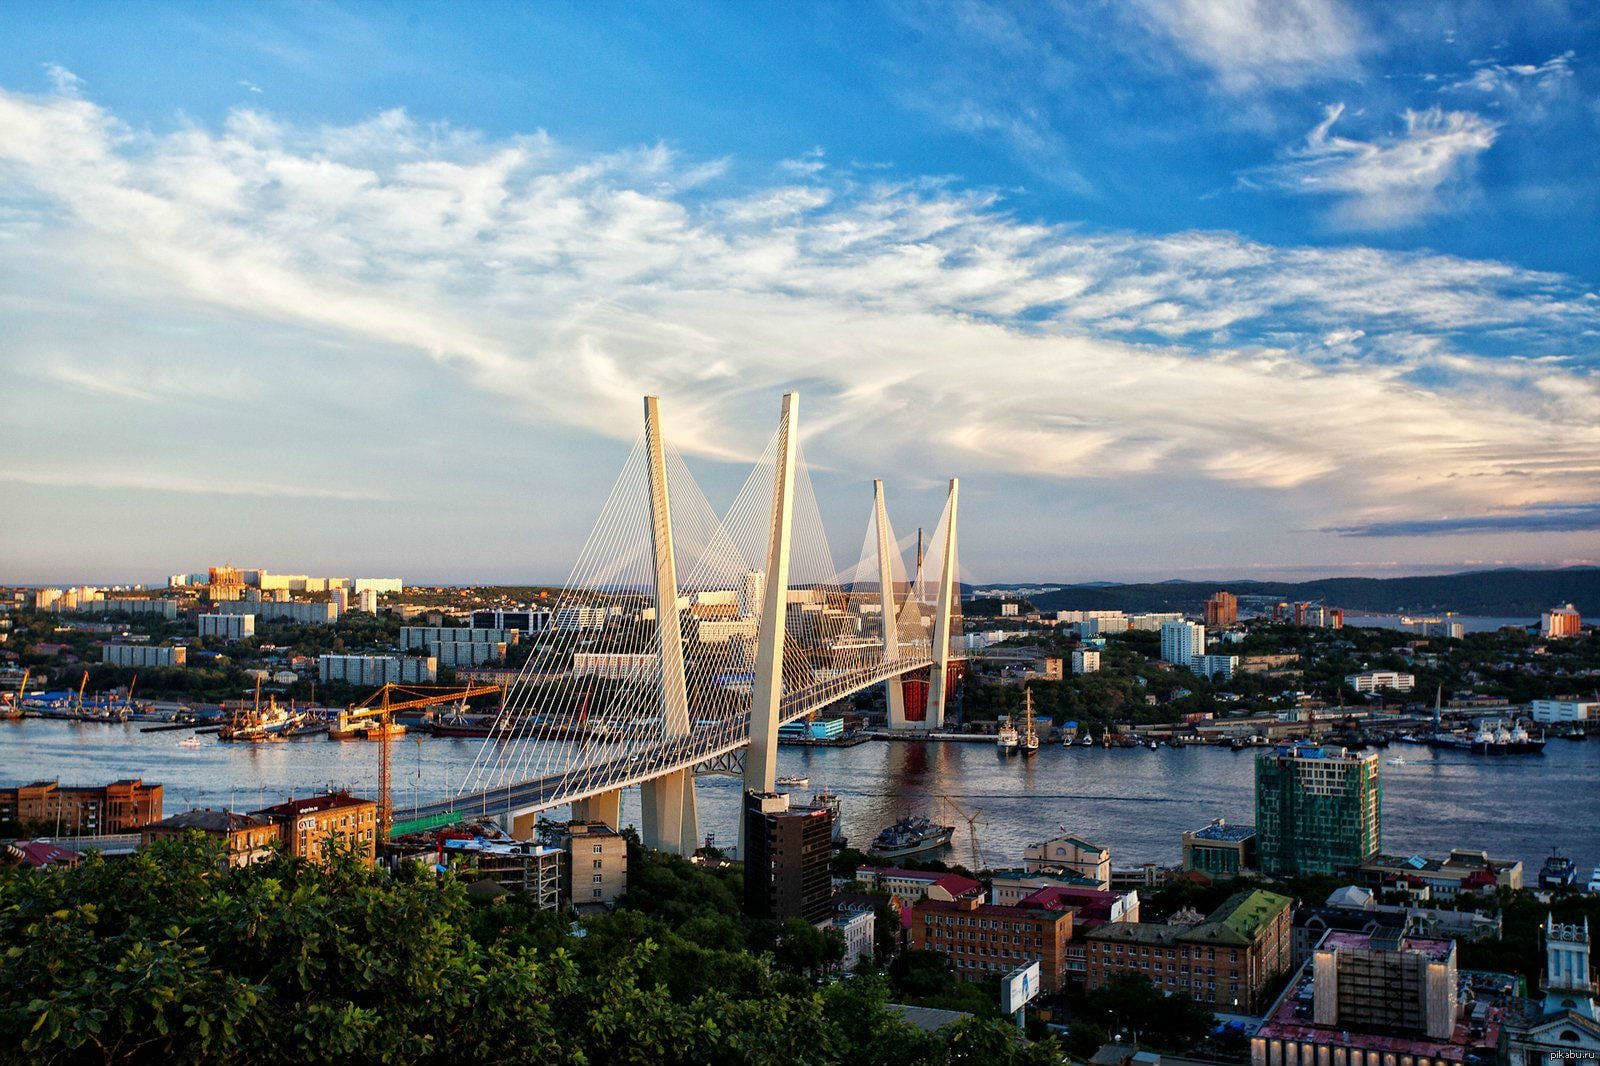 Мост во Владивостоке